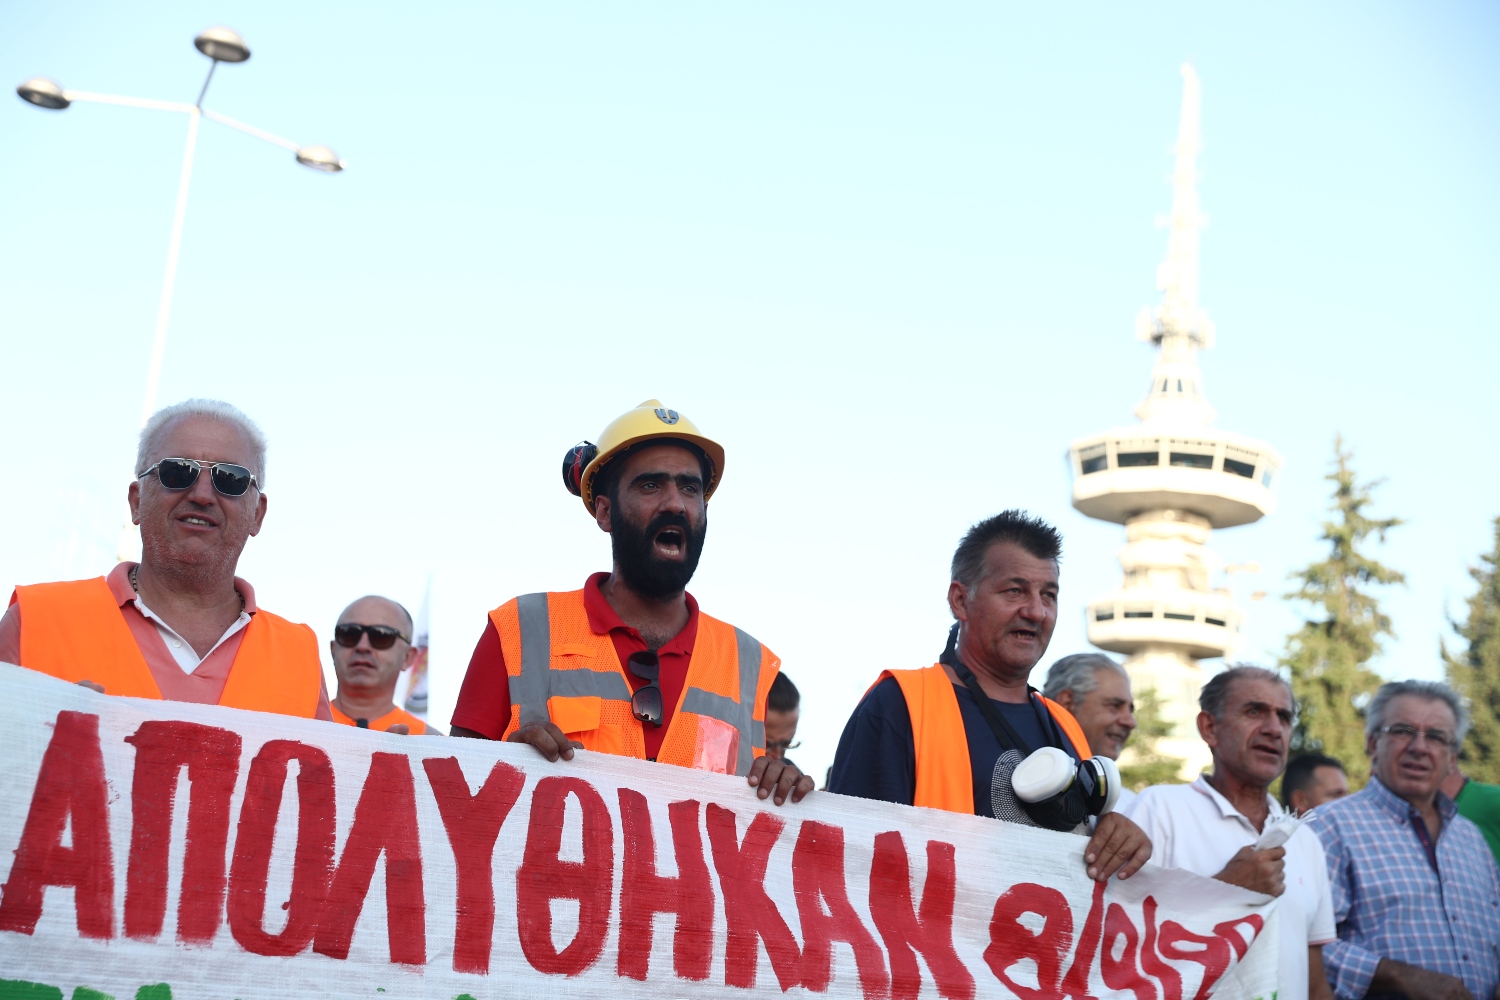 Μαζικές πορείες & διαδηλώσεις στη Θεσσαλονίκη: Ηχηρό το αντικυβερνητικό μήνυμα (Video)